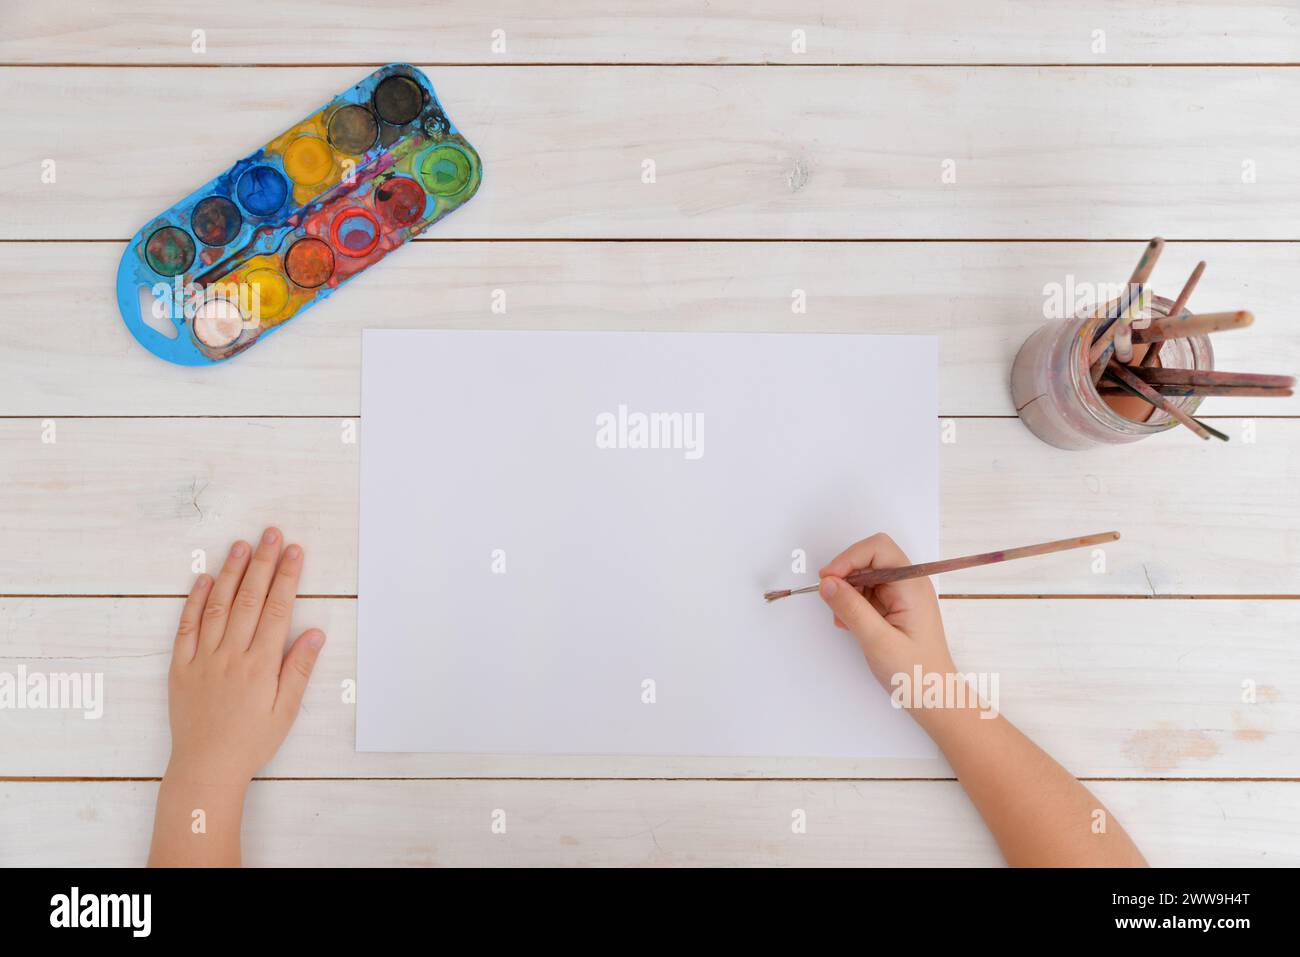 Die Hände verwenden einen Pinsel für Aquarellmalerei auf sauberem Papier. Vorstellung von Kreativität, Kunst, Kindheit, Fantasie und künstlerischem Ausdruck Stockfoto